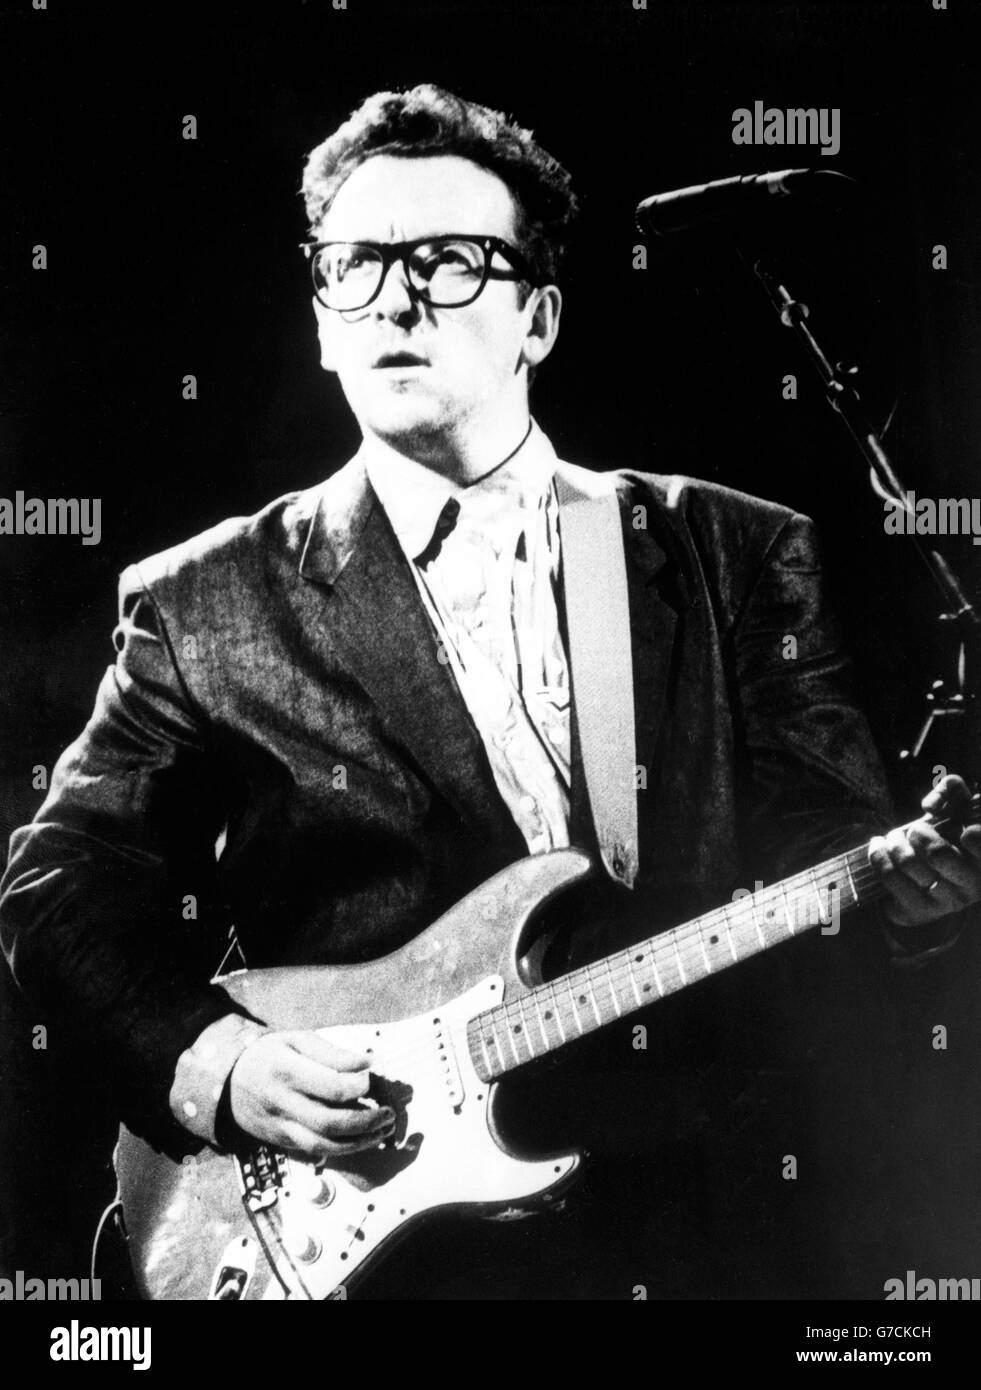 Musica - Elvis Costello. Il musicista Elvis Costello. Foto Stock